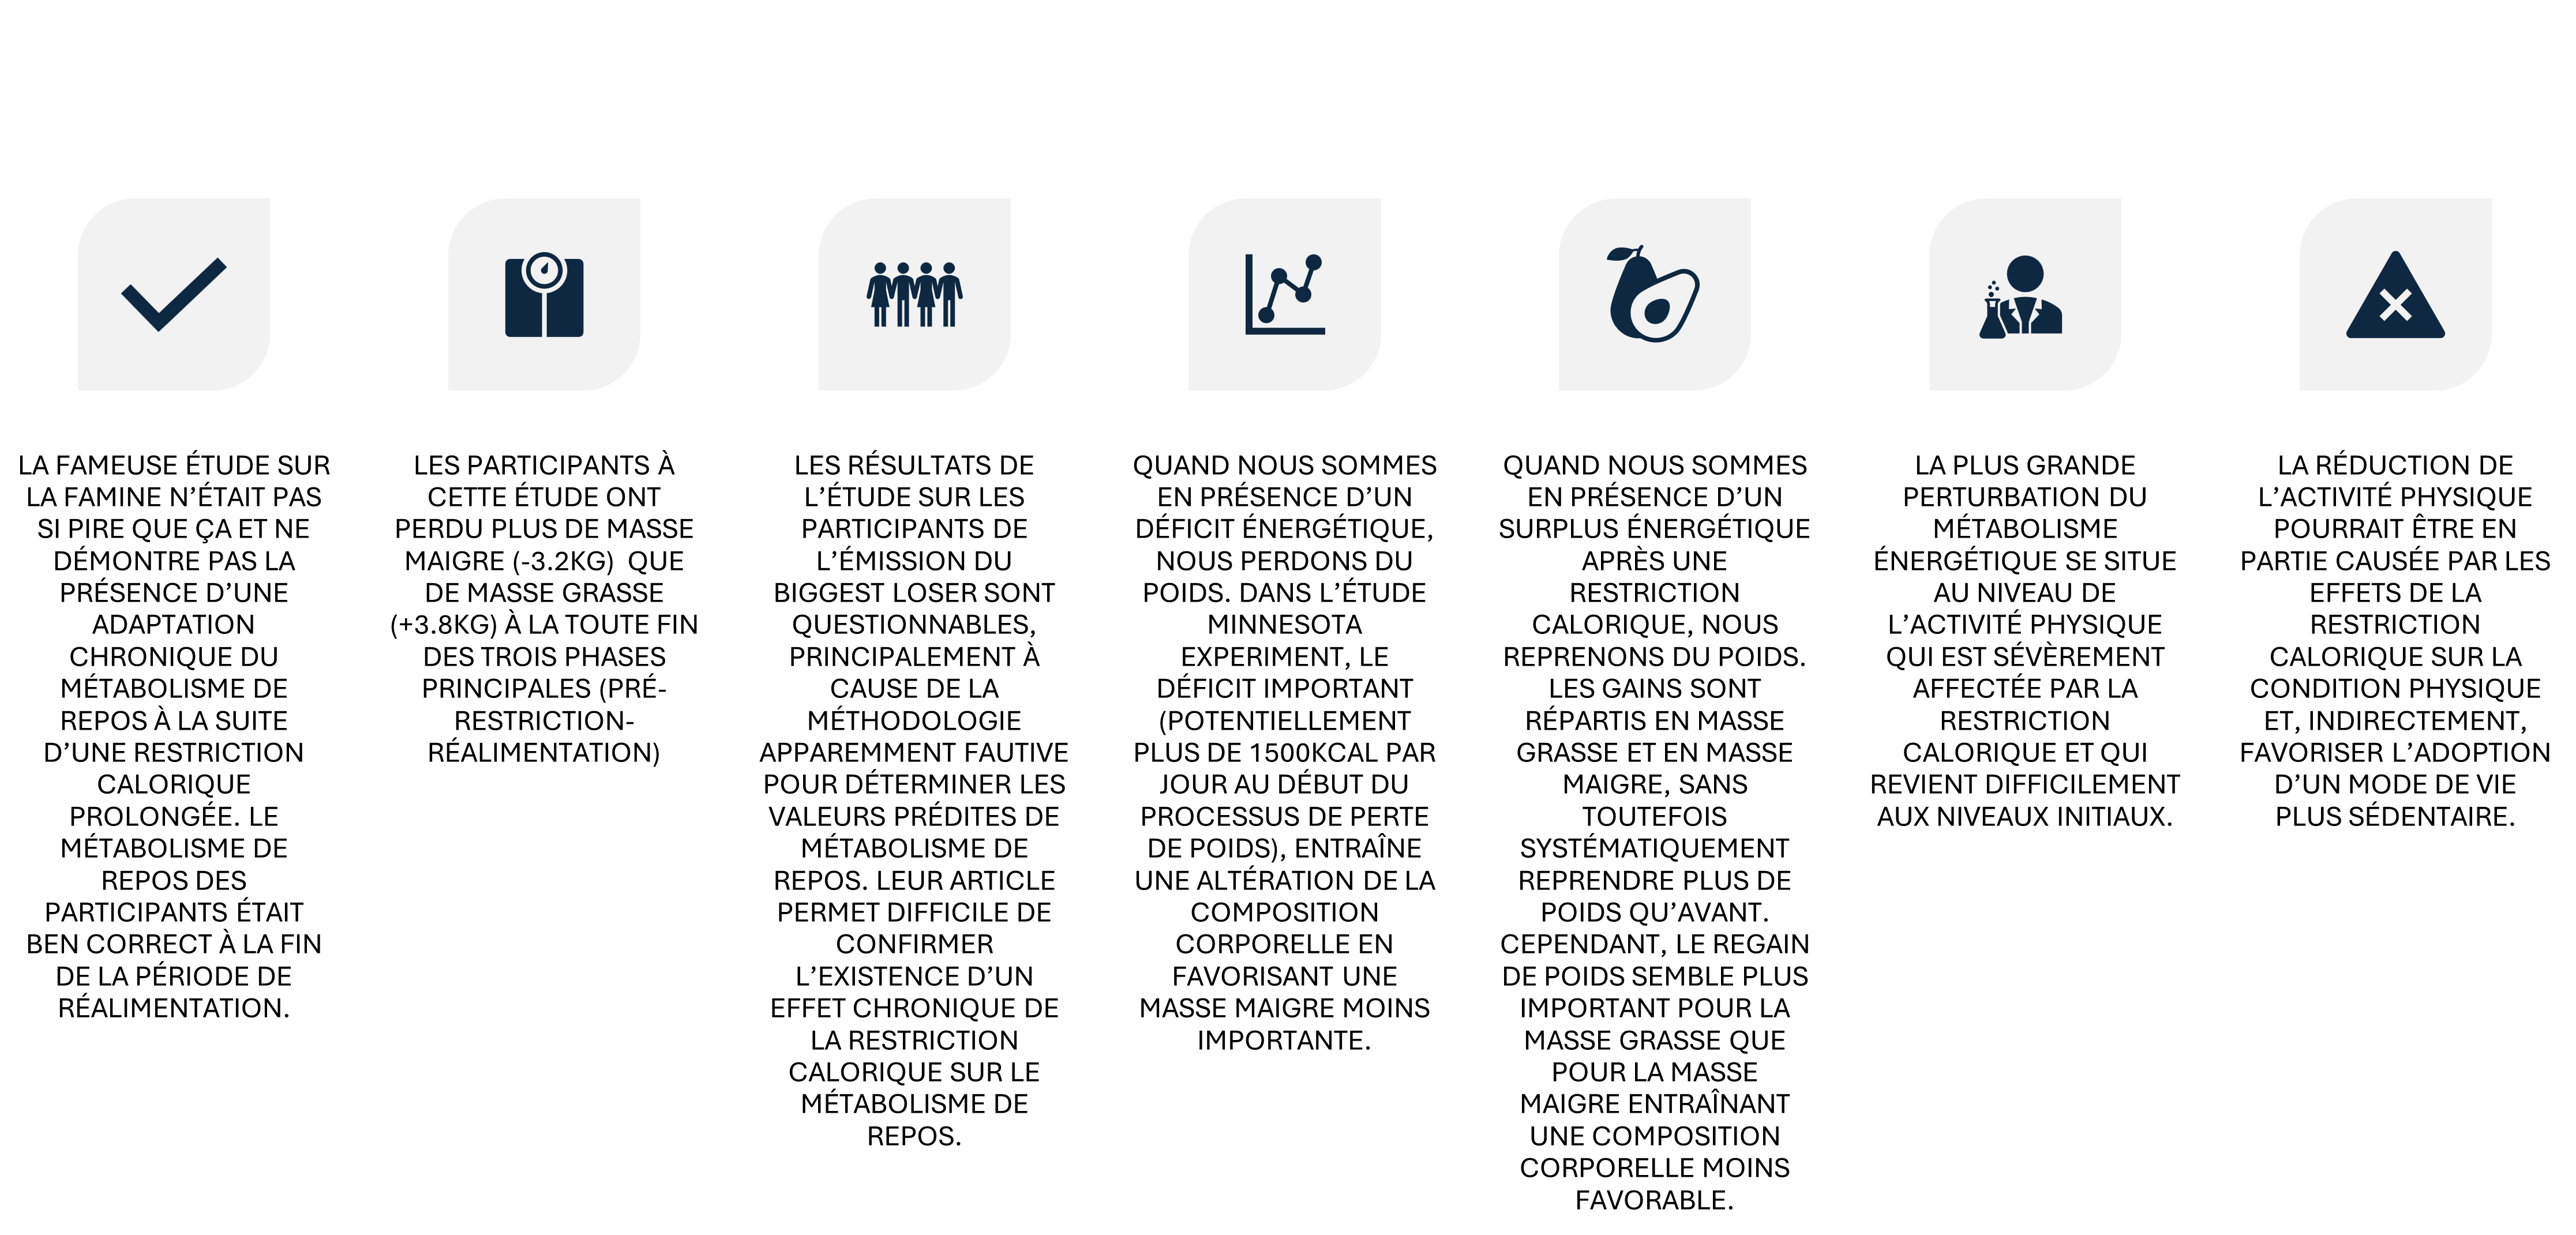 Icônes sur fond sombre de gauche à droite : coche, loupe sur le document, groupe de personnes, flèche nord-est, panneau de fauteuil roulant, silhouette avec ordinateur portable au bureau, outils croisés.